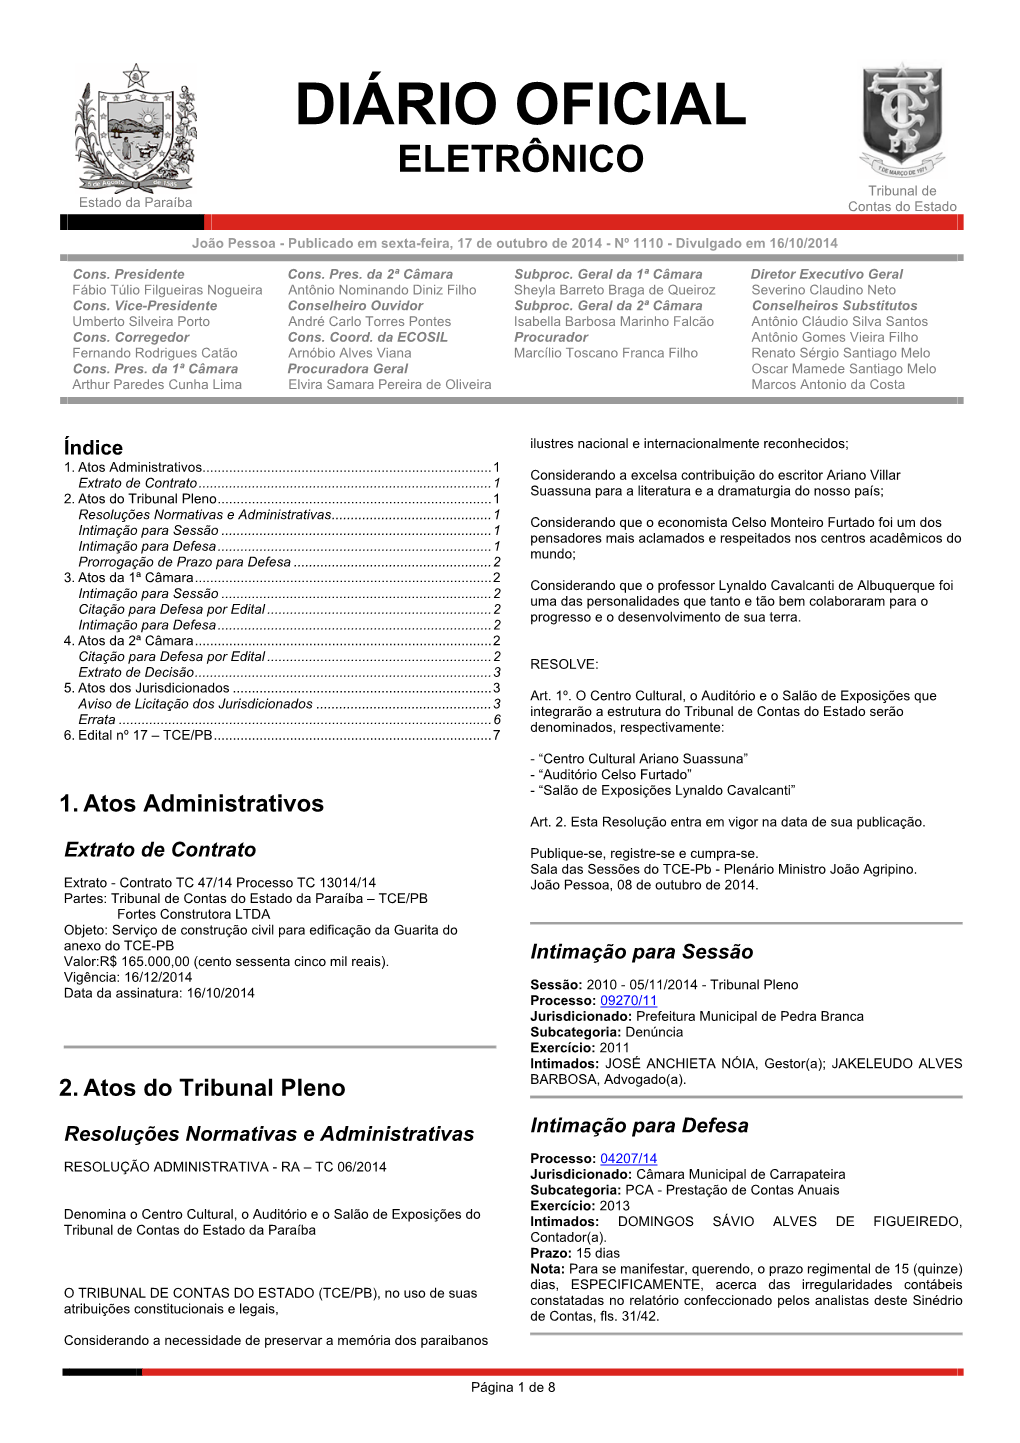 Diário Oficial Eletrônico Do TCE-PB - Publicado Em Sexta-Feira, 17 De Outubro De 2014 - Nº 1110